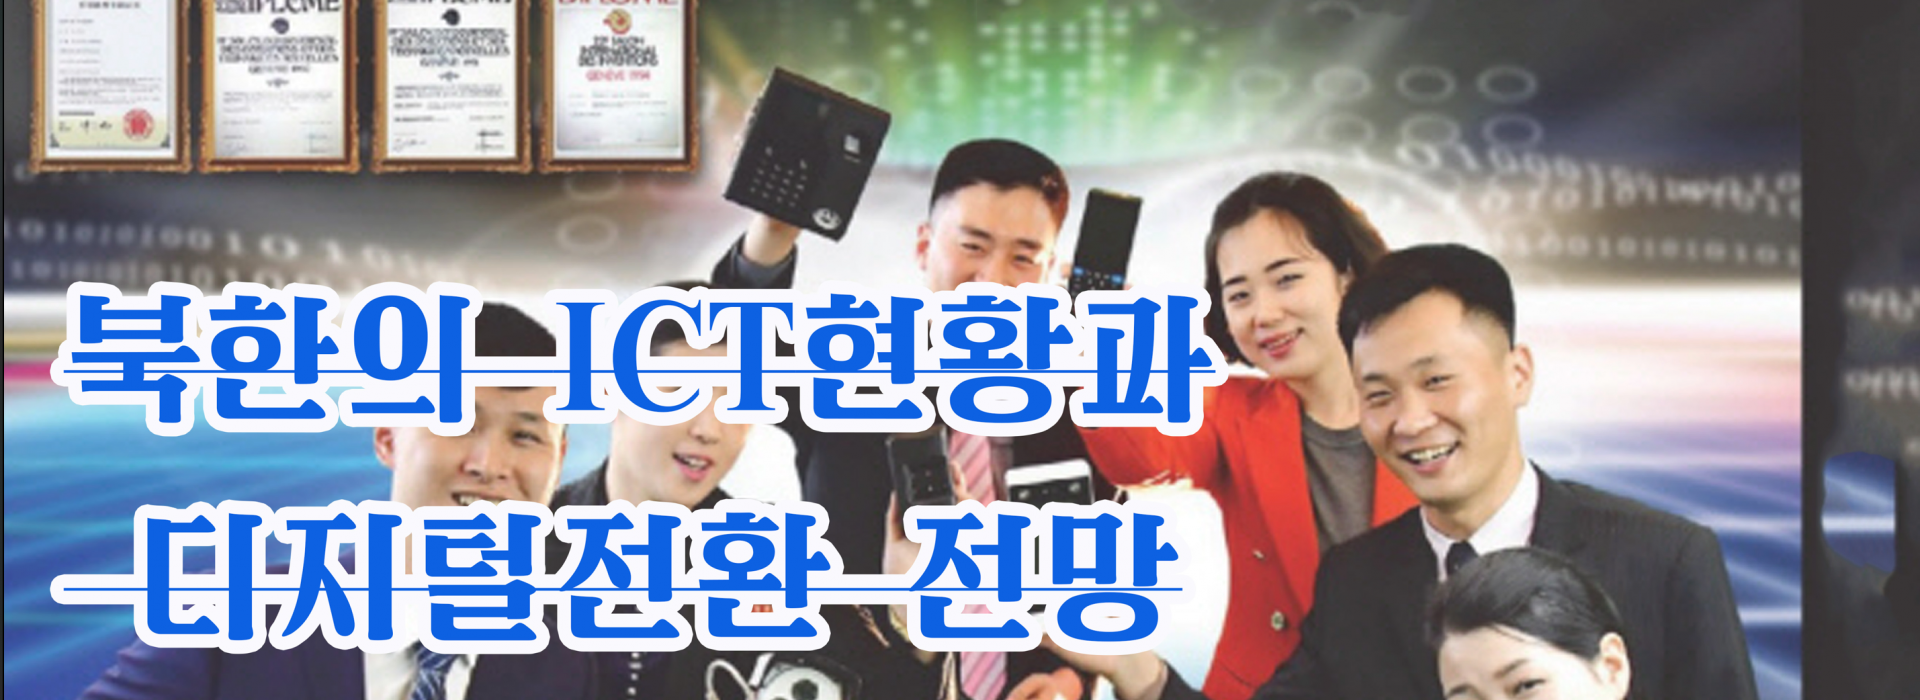 북한의 ICT현황과 디지털전환 전망